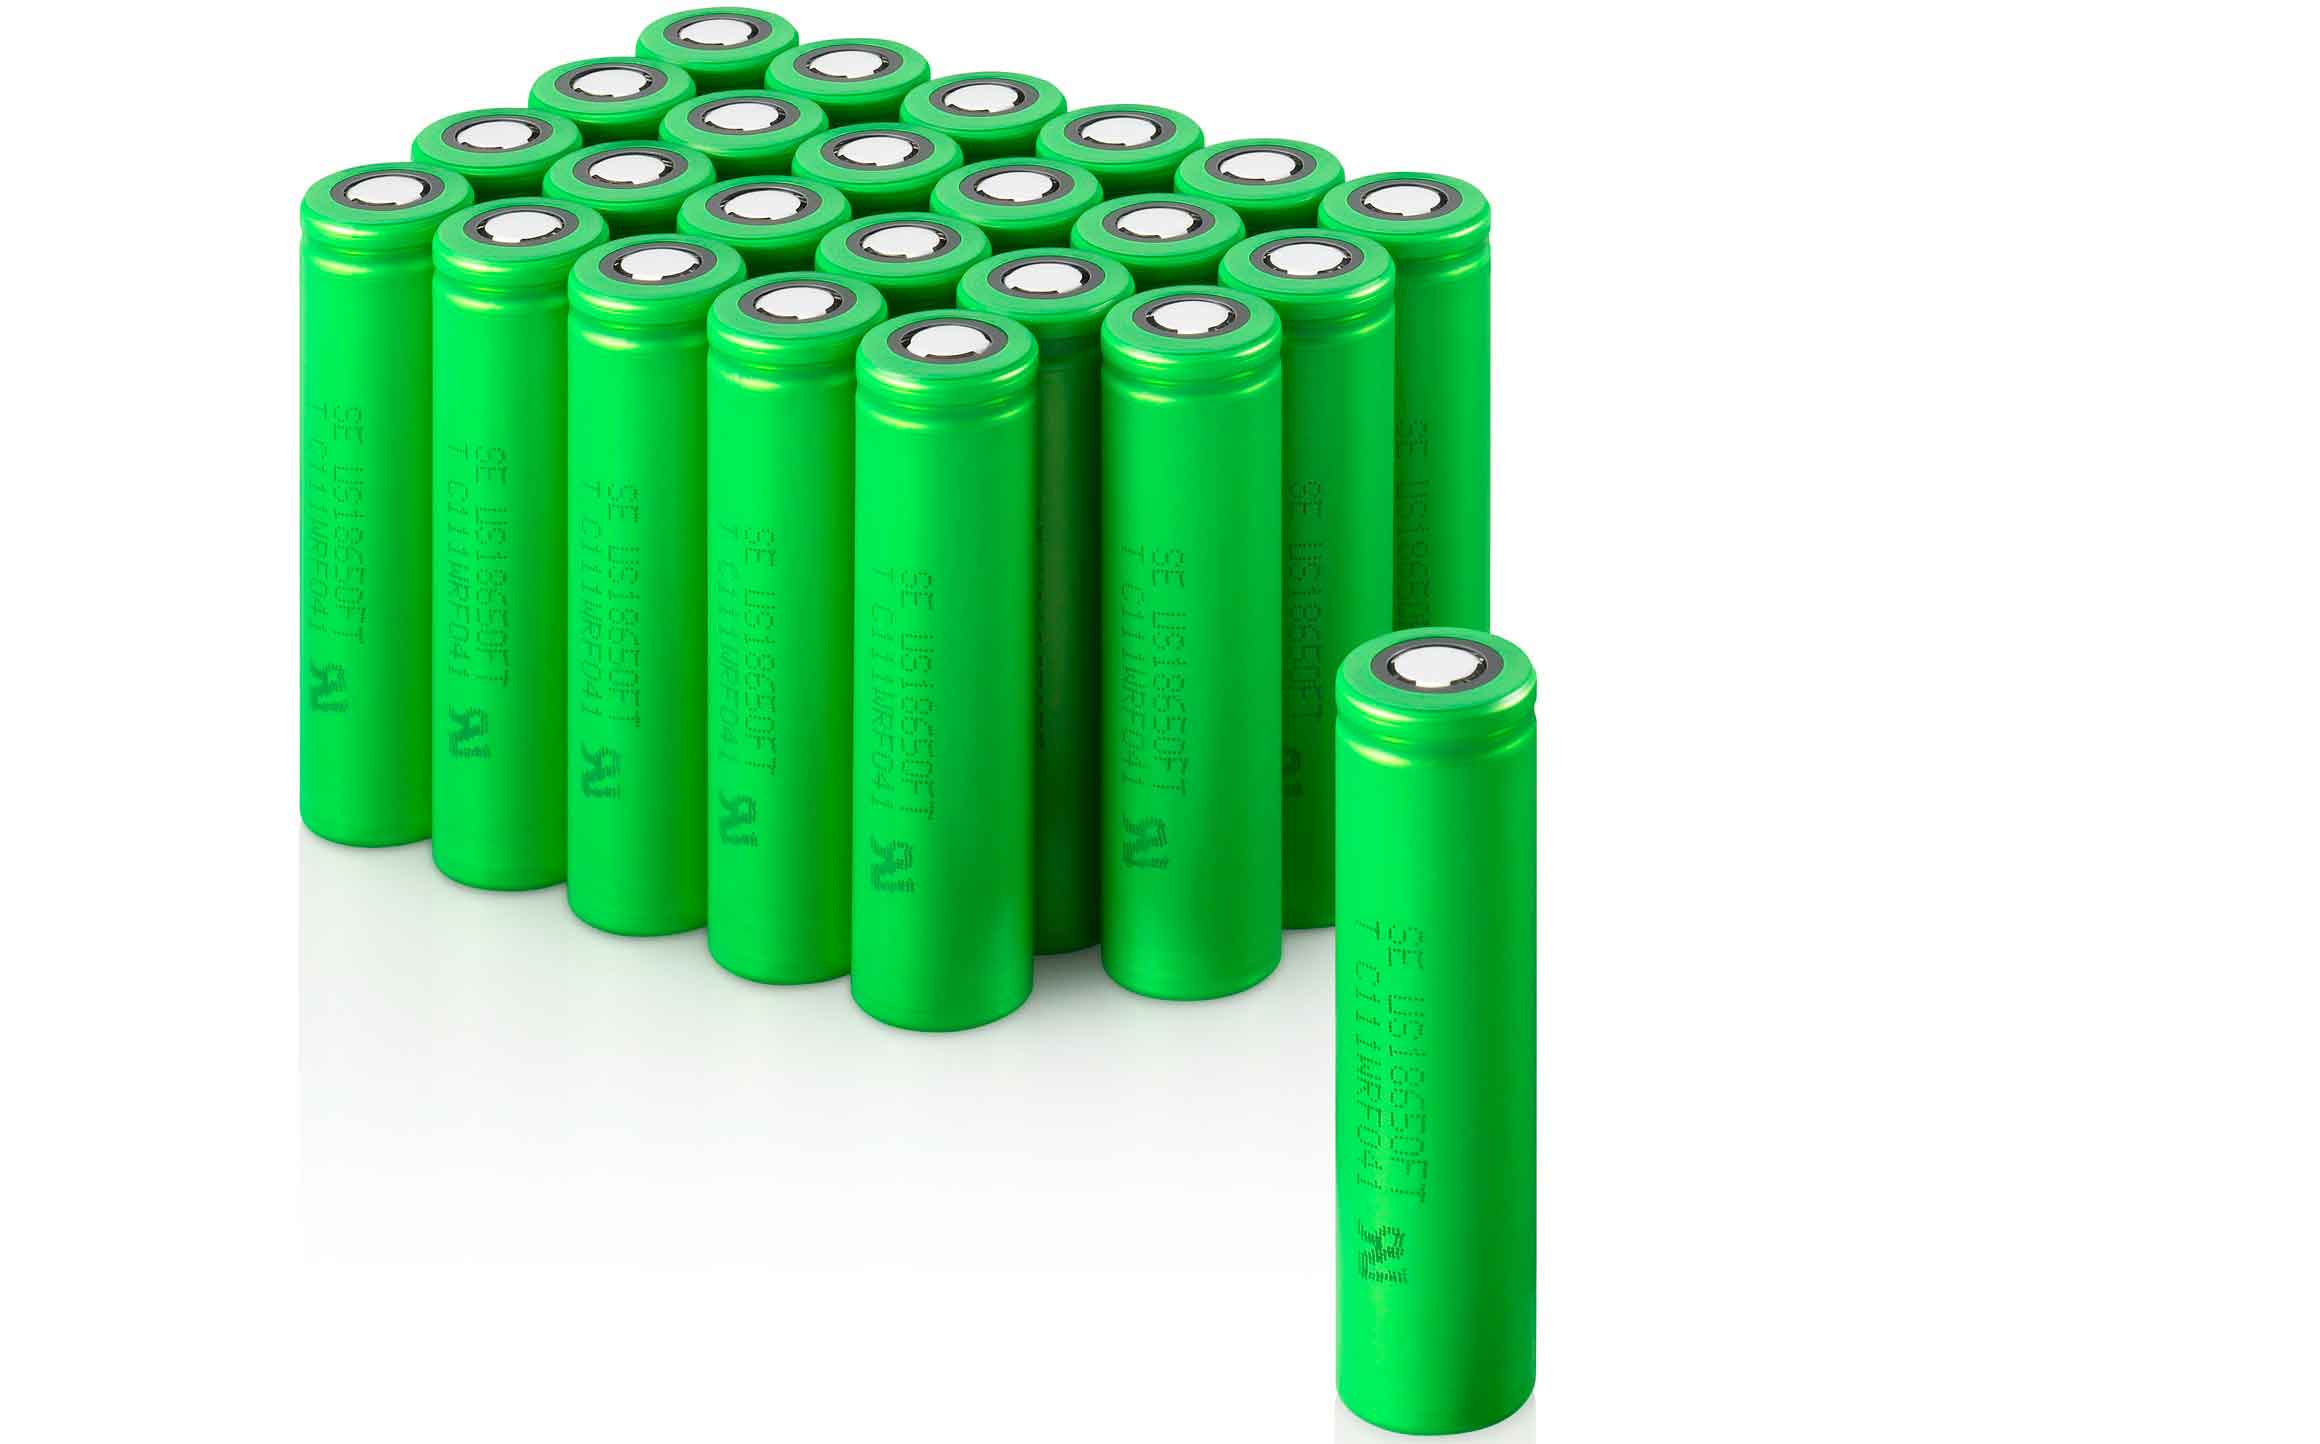  باتری ارزان از نمک برای خودروهای برقی